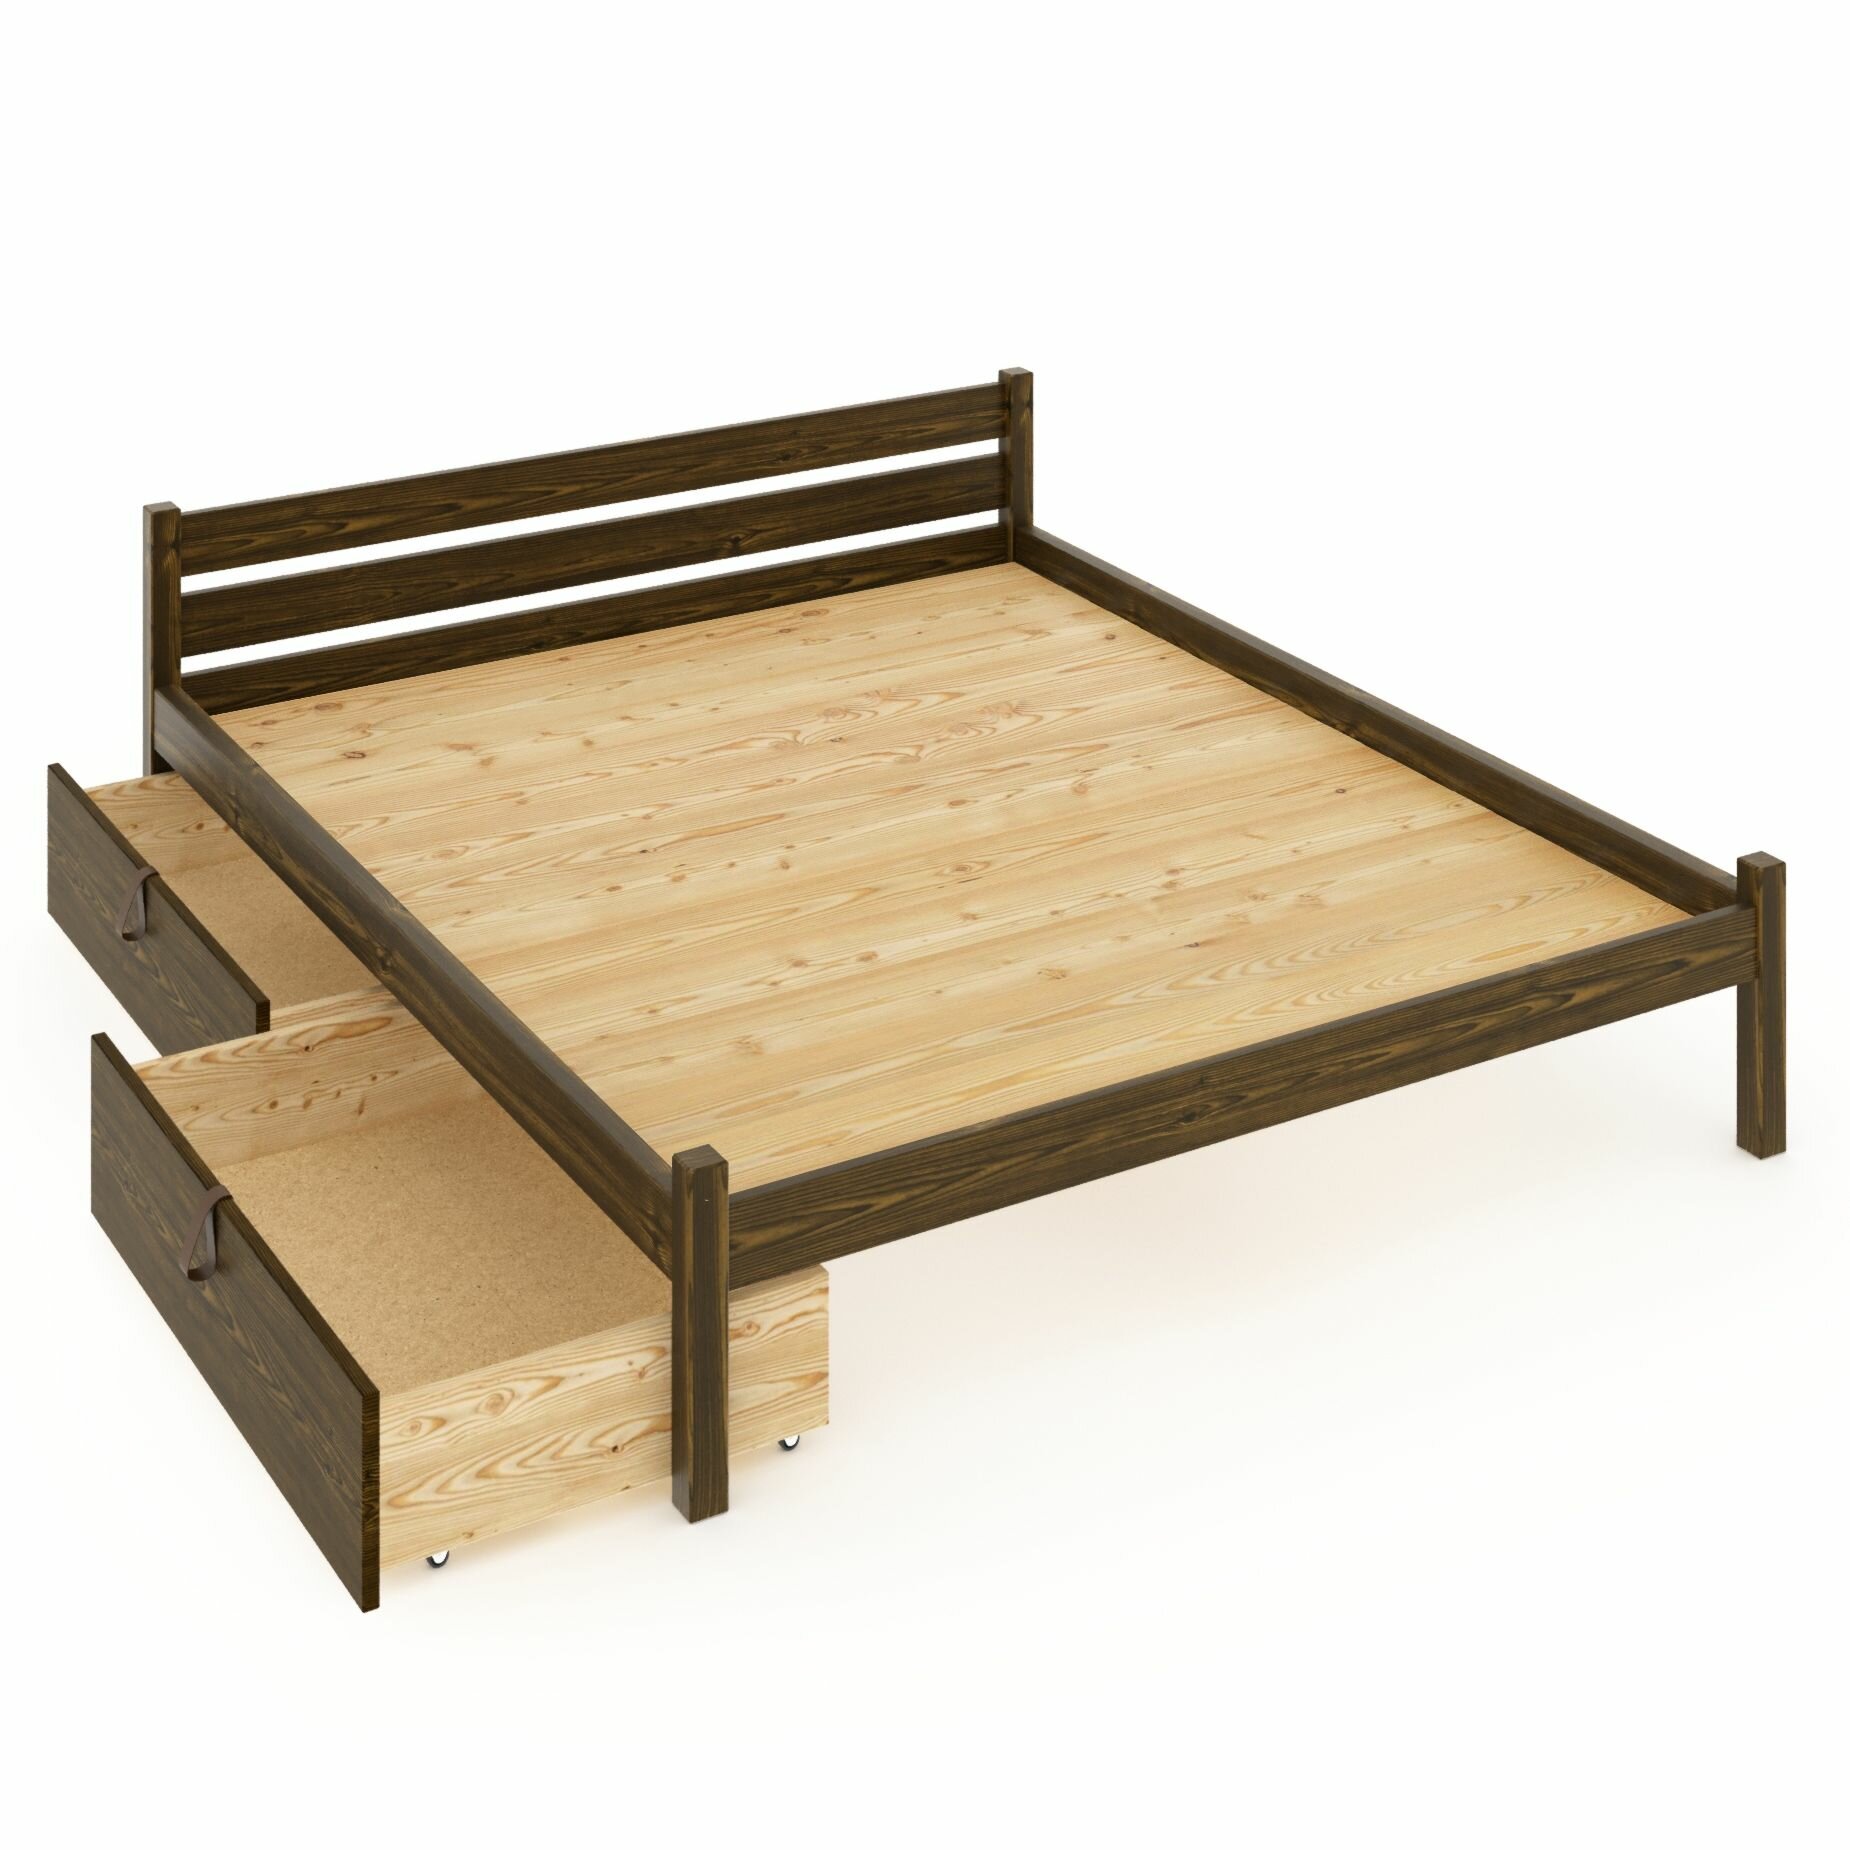 Кровать двуспальная Классика из массива сосны со сплошным основанием 200х180 см (габариты 210х190), с двумя выкатными ящиками, цвет темного дуба